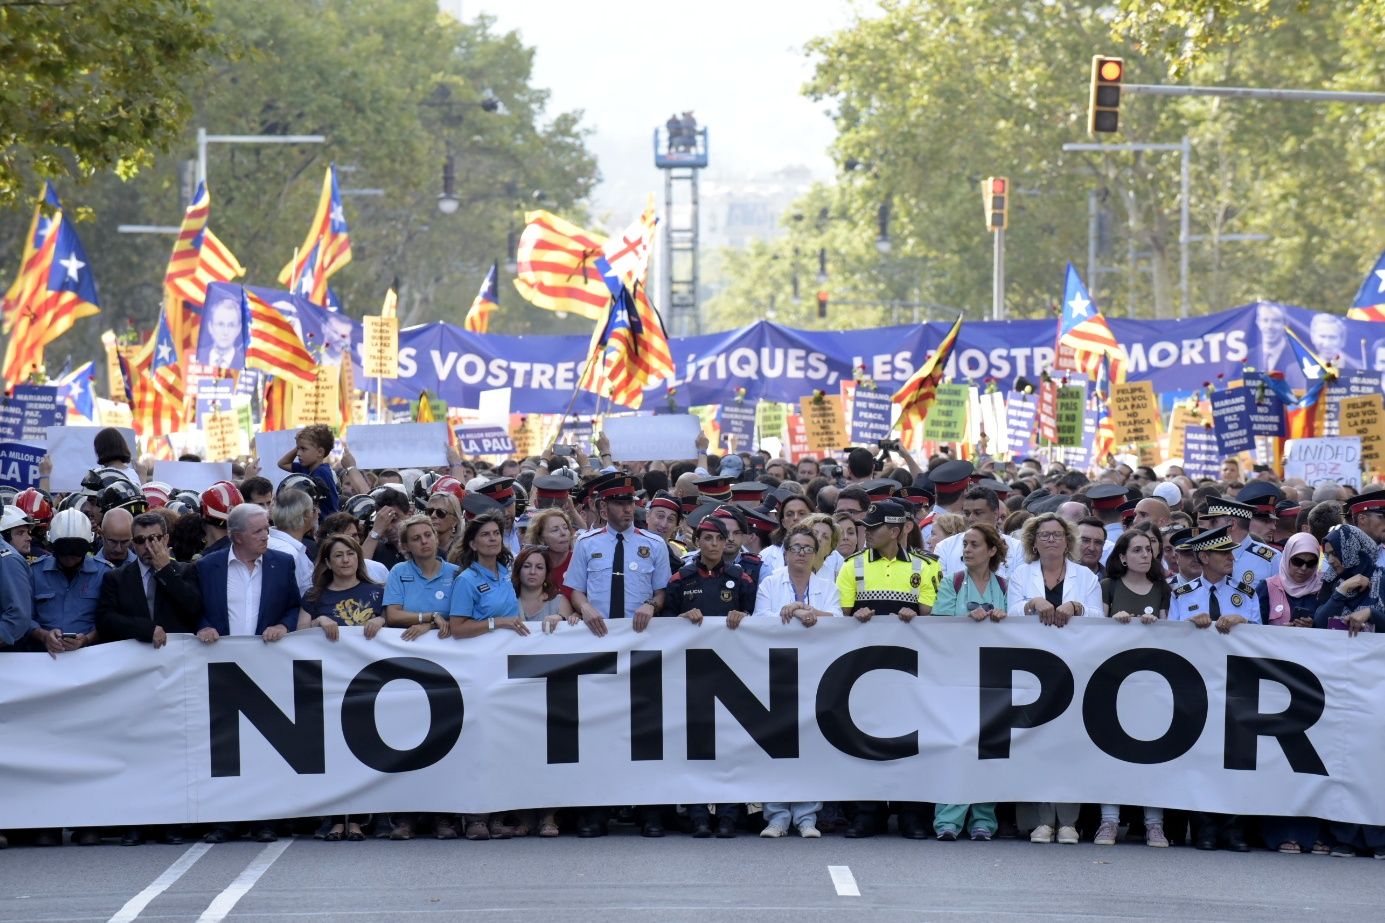 Los catalanófobos atizan el odio en Twitter: "Una furgoneta ahora, por favor"